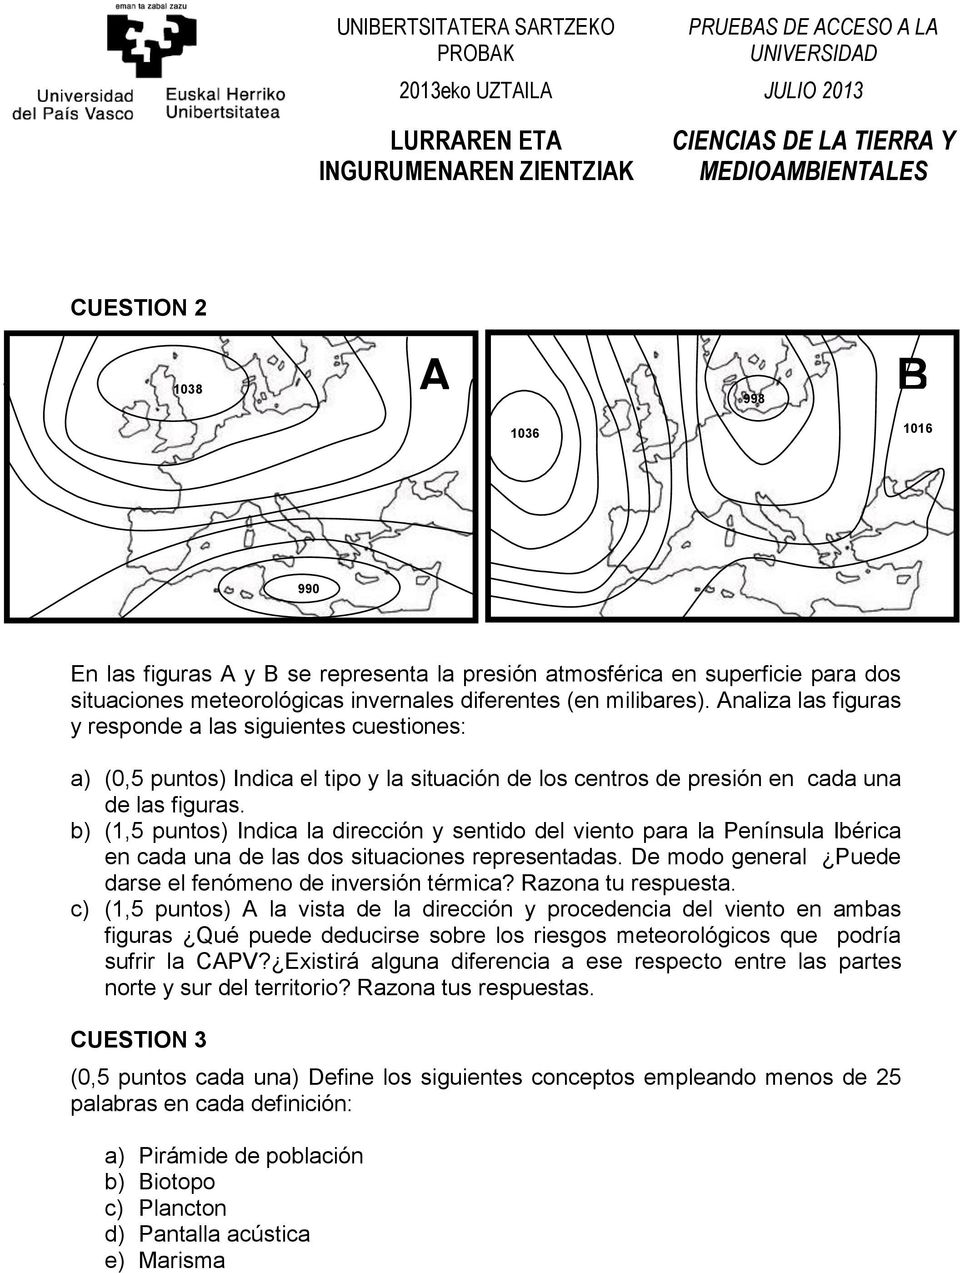 b) (1,5 puntos) Indica la dirección y sentido del viento para la Península Ibérica en cada una de las dos situaciones representadas. De modo general Puede darse el fenómeno de inversión térmica?